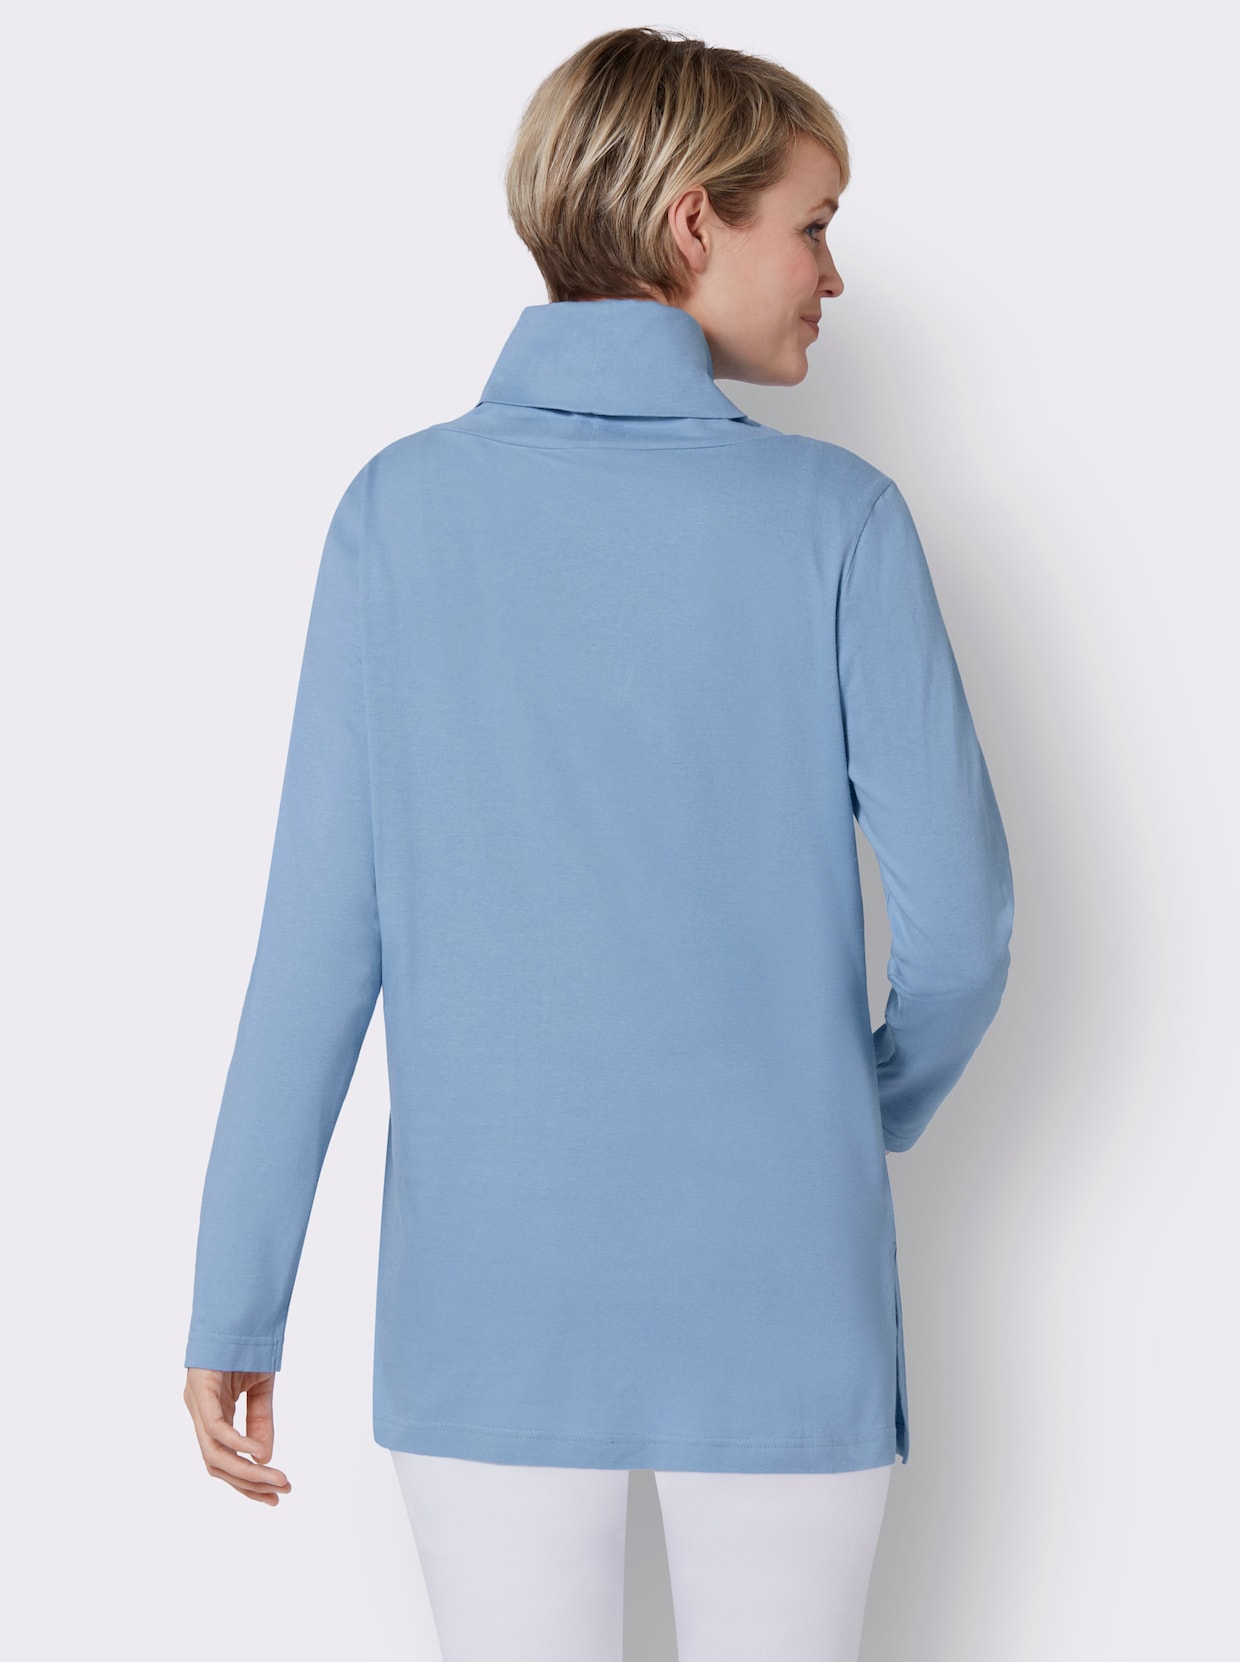 Longshirt - himmelblau-bedruckt